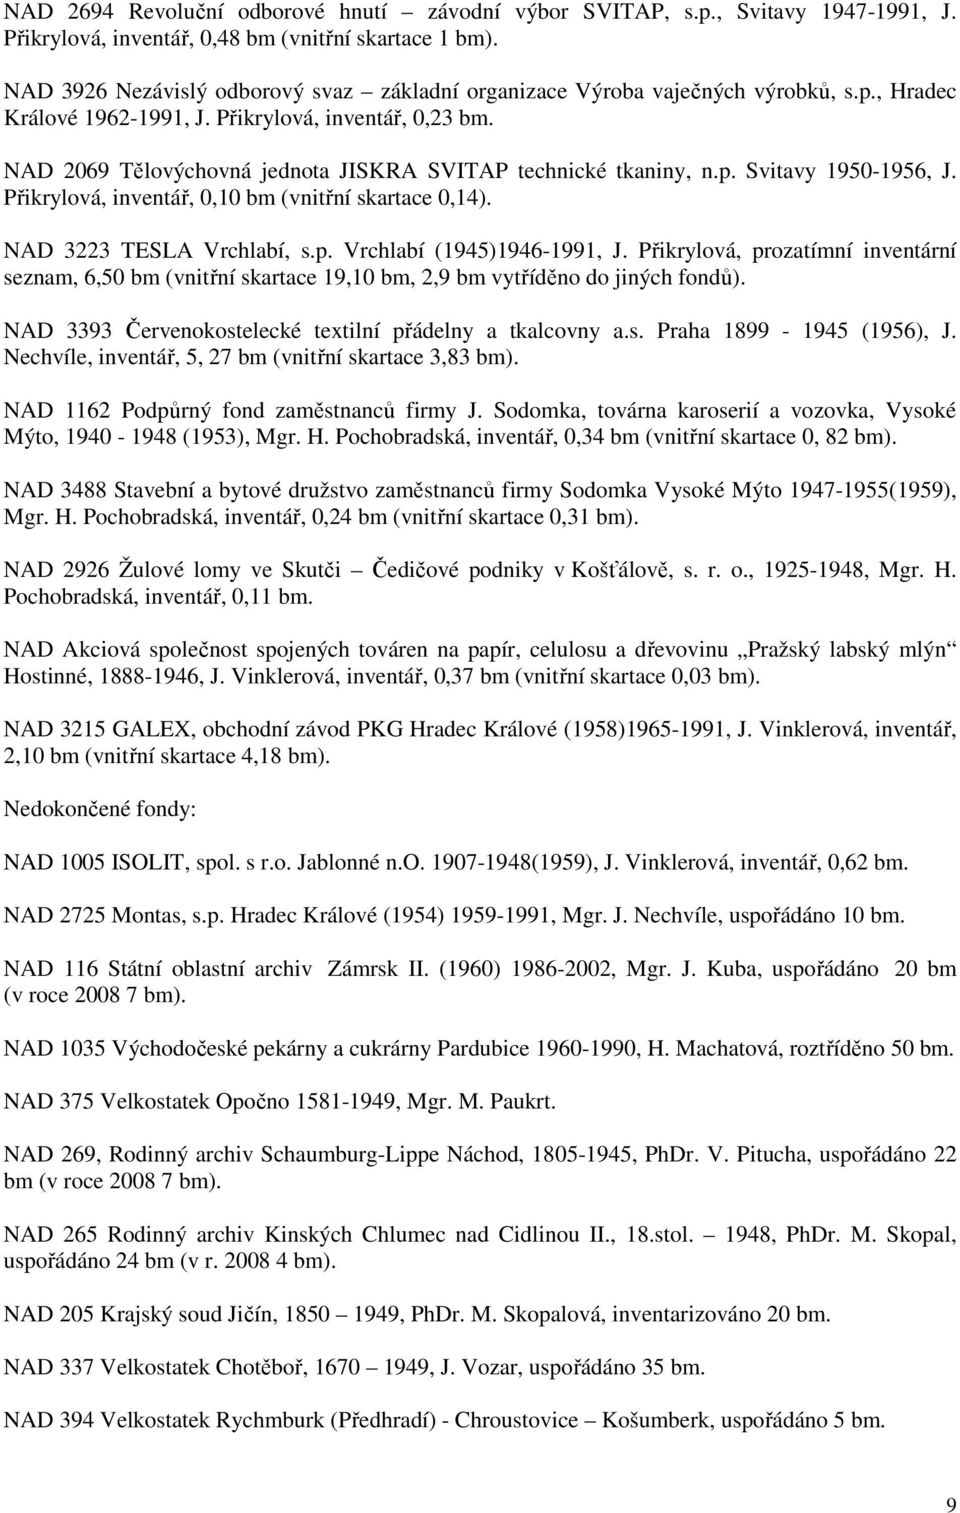 NAD 269 Tělovýchovná jednota JISKRA SVITAP technické tkaniny, n.p. Svitavy 195-1956, J. Přikrylová, inventář,,1 bm (vnitřní skartace,14). NAD 3223 TESLA Vrchlabí, s.p. Vrchlabí (1945)1946-1991, J.